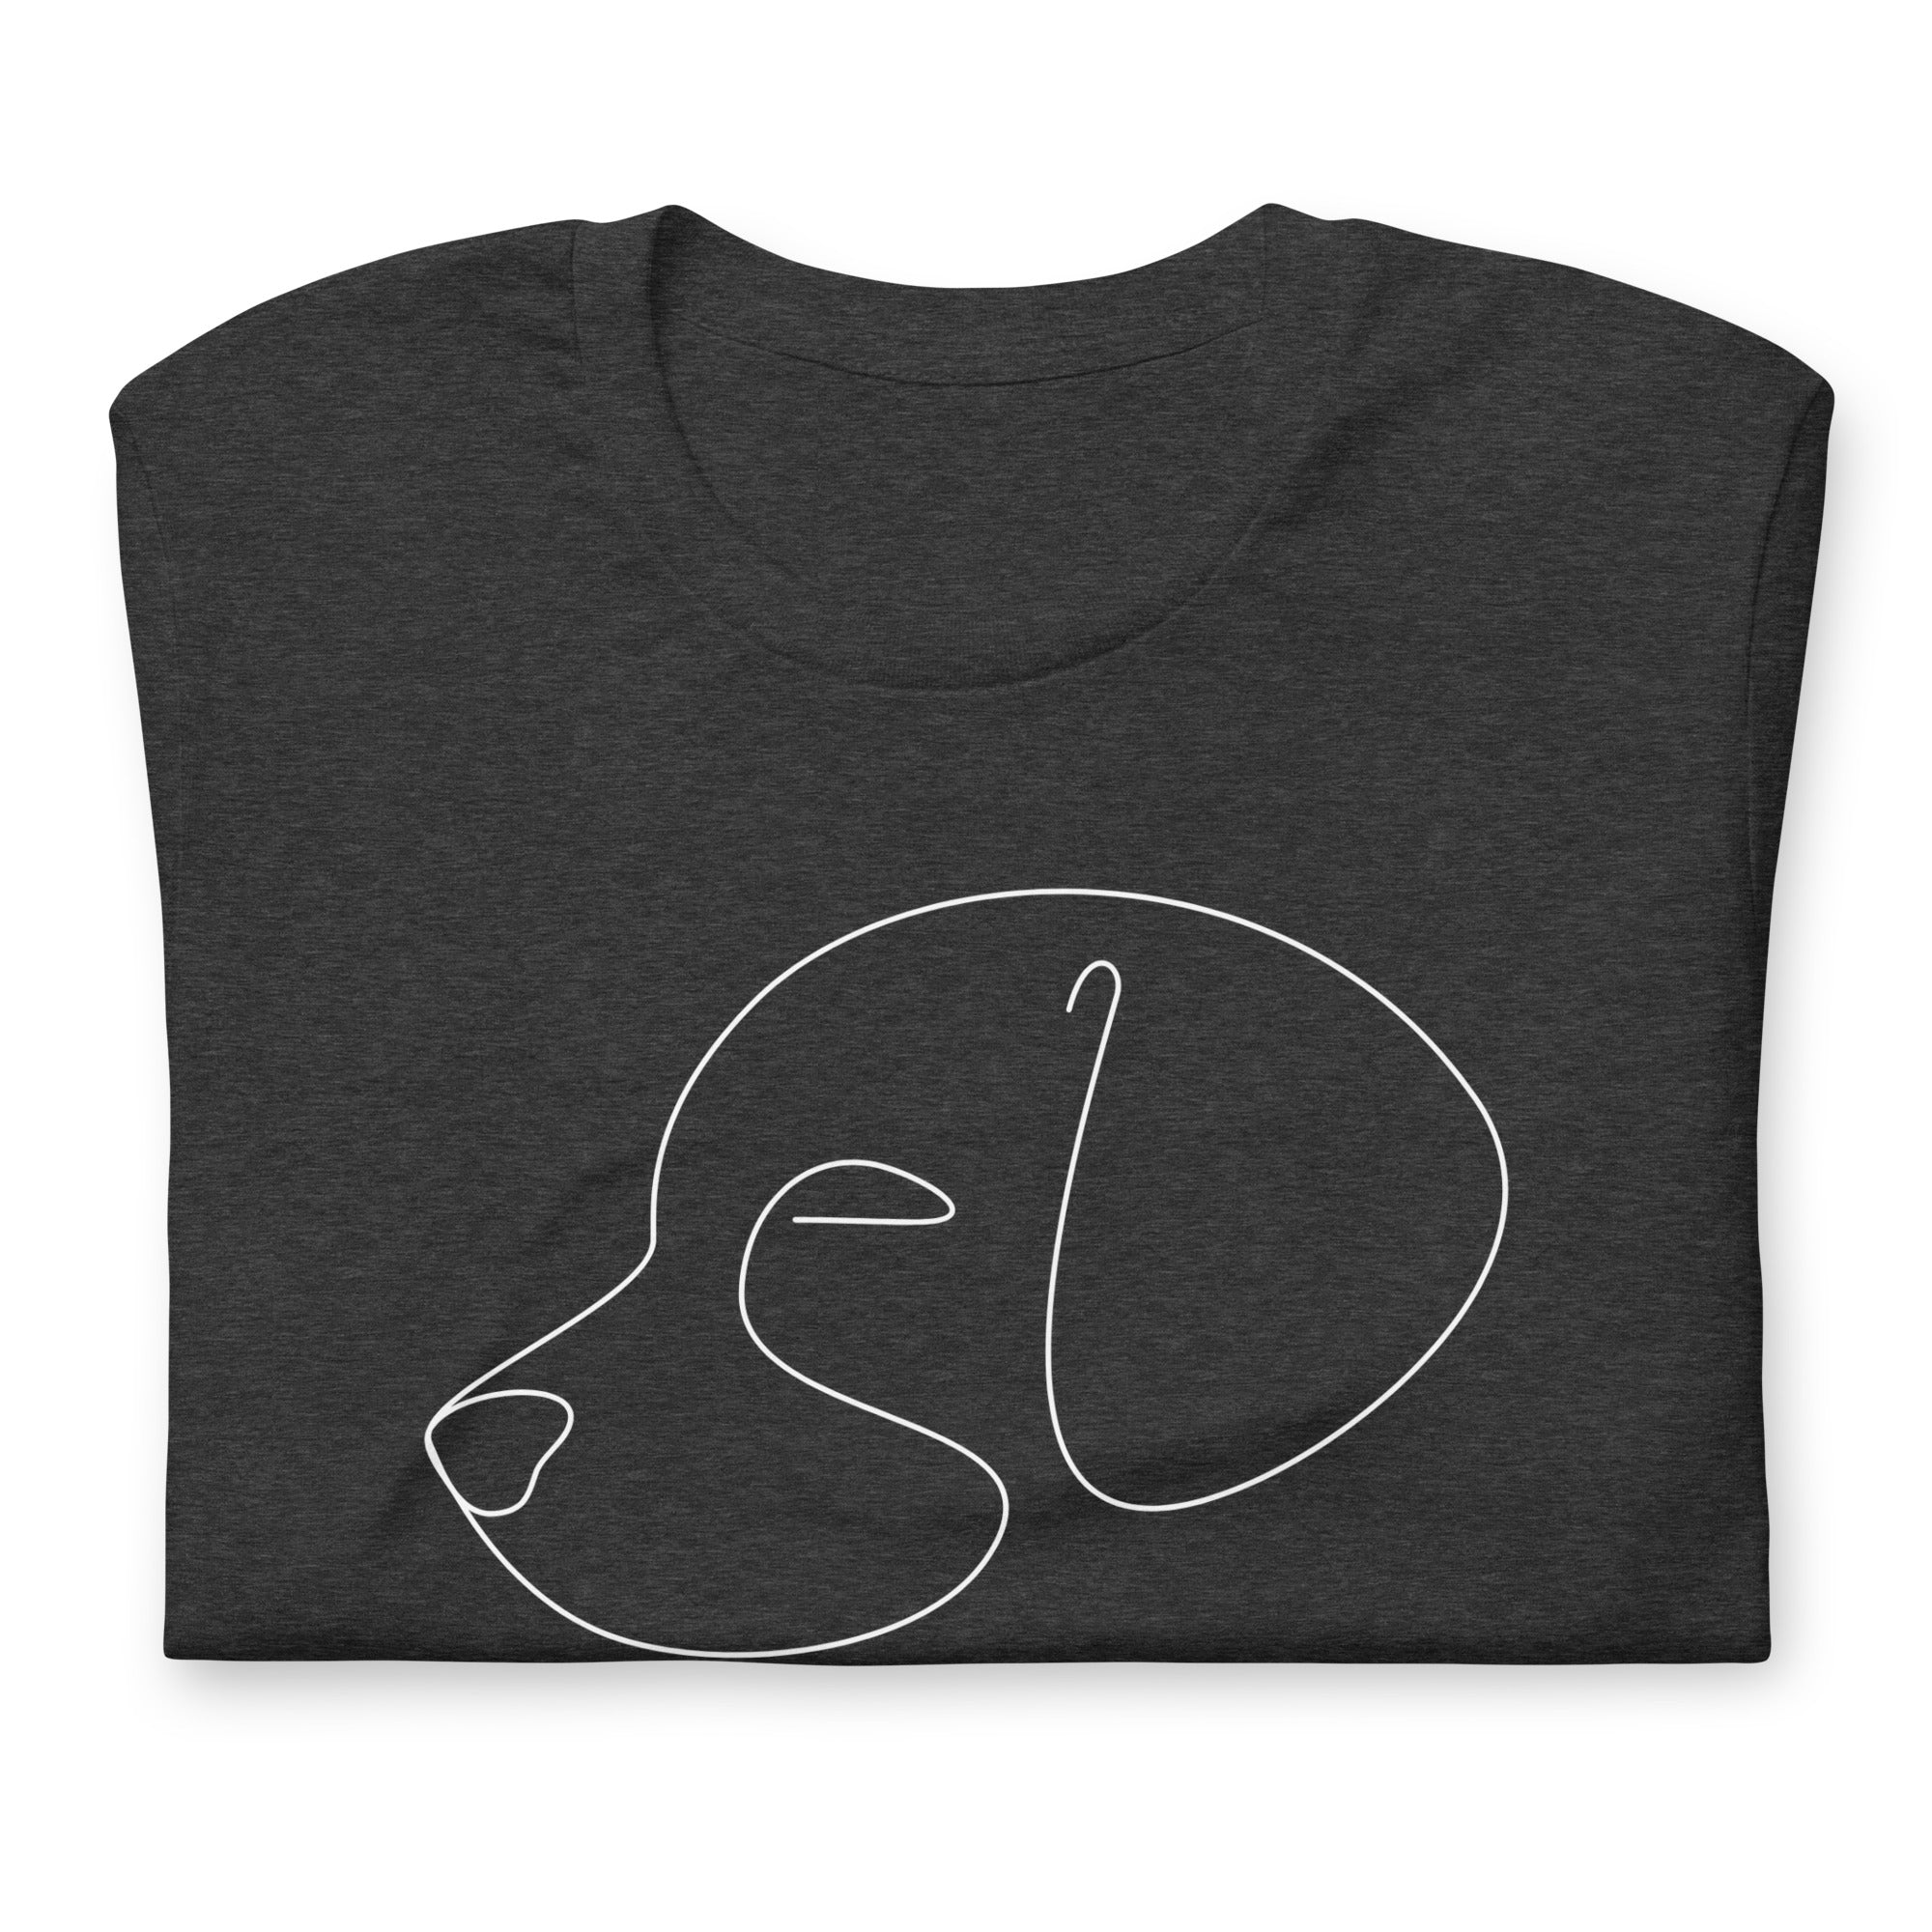 Dog Outline T-Shirt